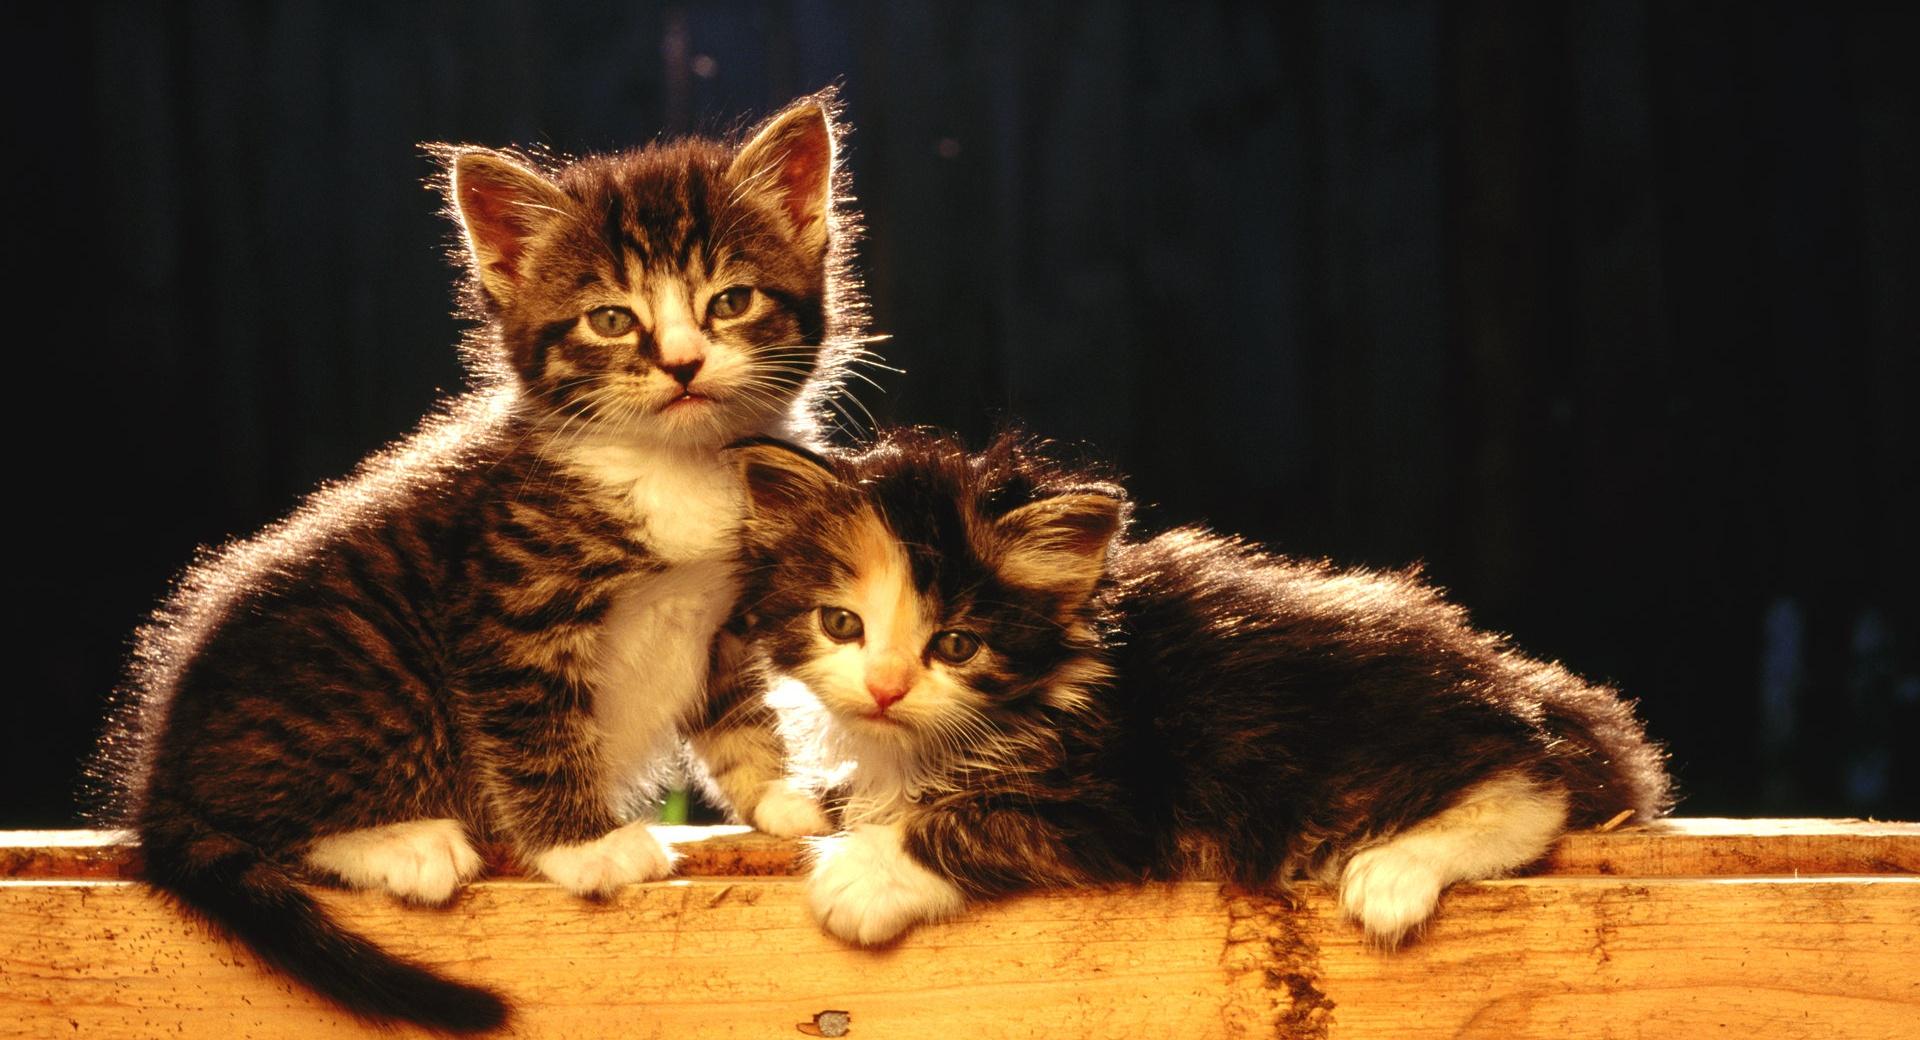 Cute Newborn Kittens at 1024 x 1024 iPad size wallpapers HD quality